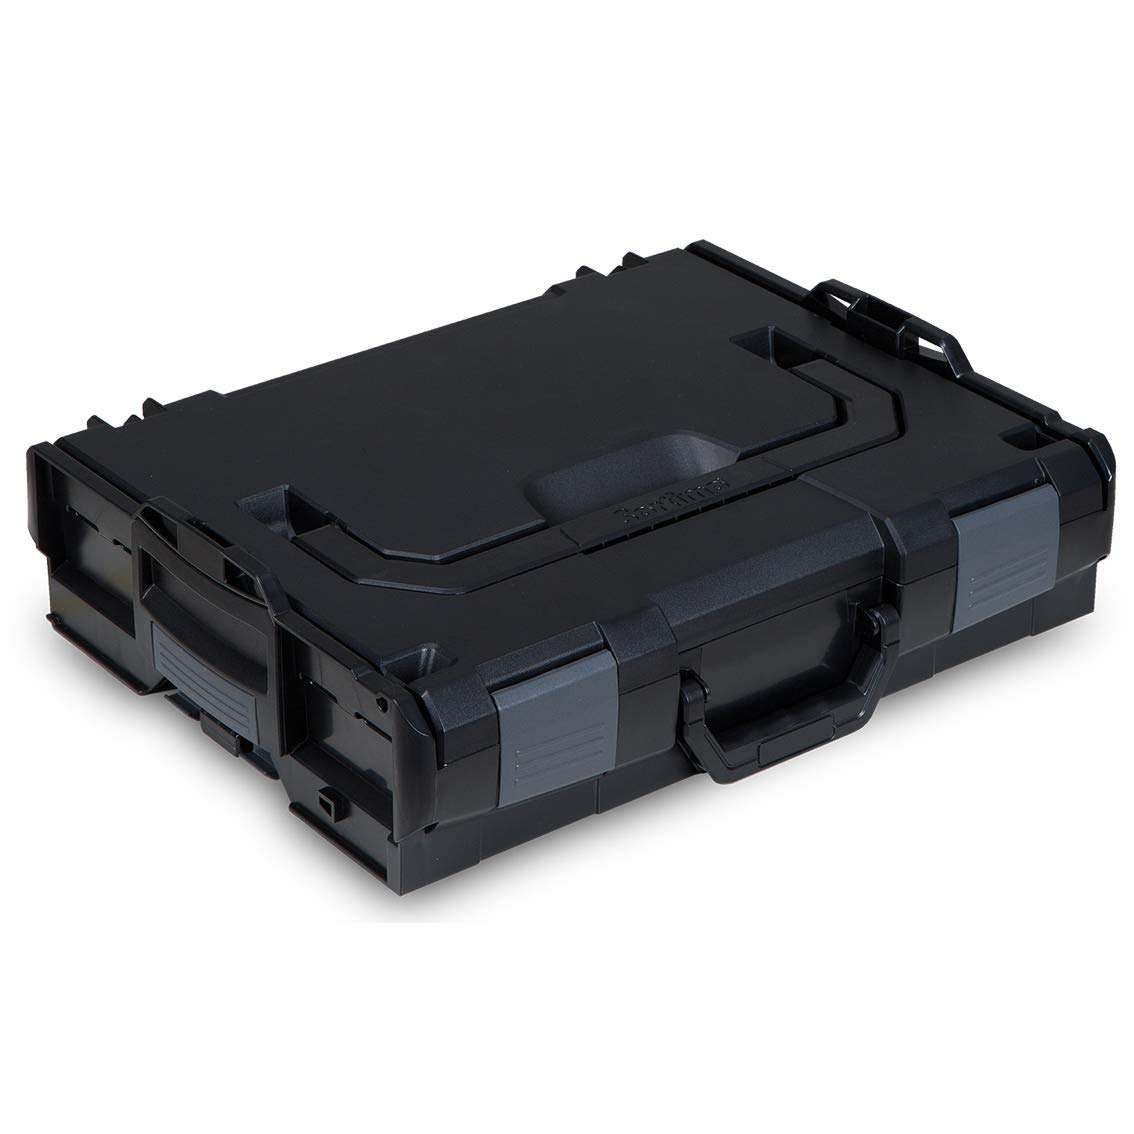 L-BOXX® 102 Bosch Sortimo schwarz leer BSS Werkzeugkoffer Transportbox black